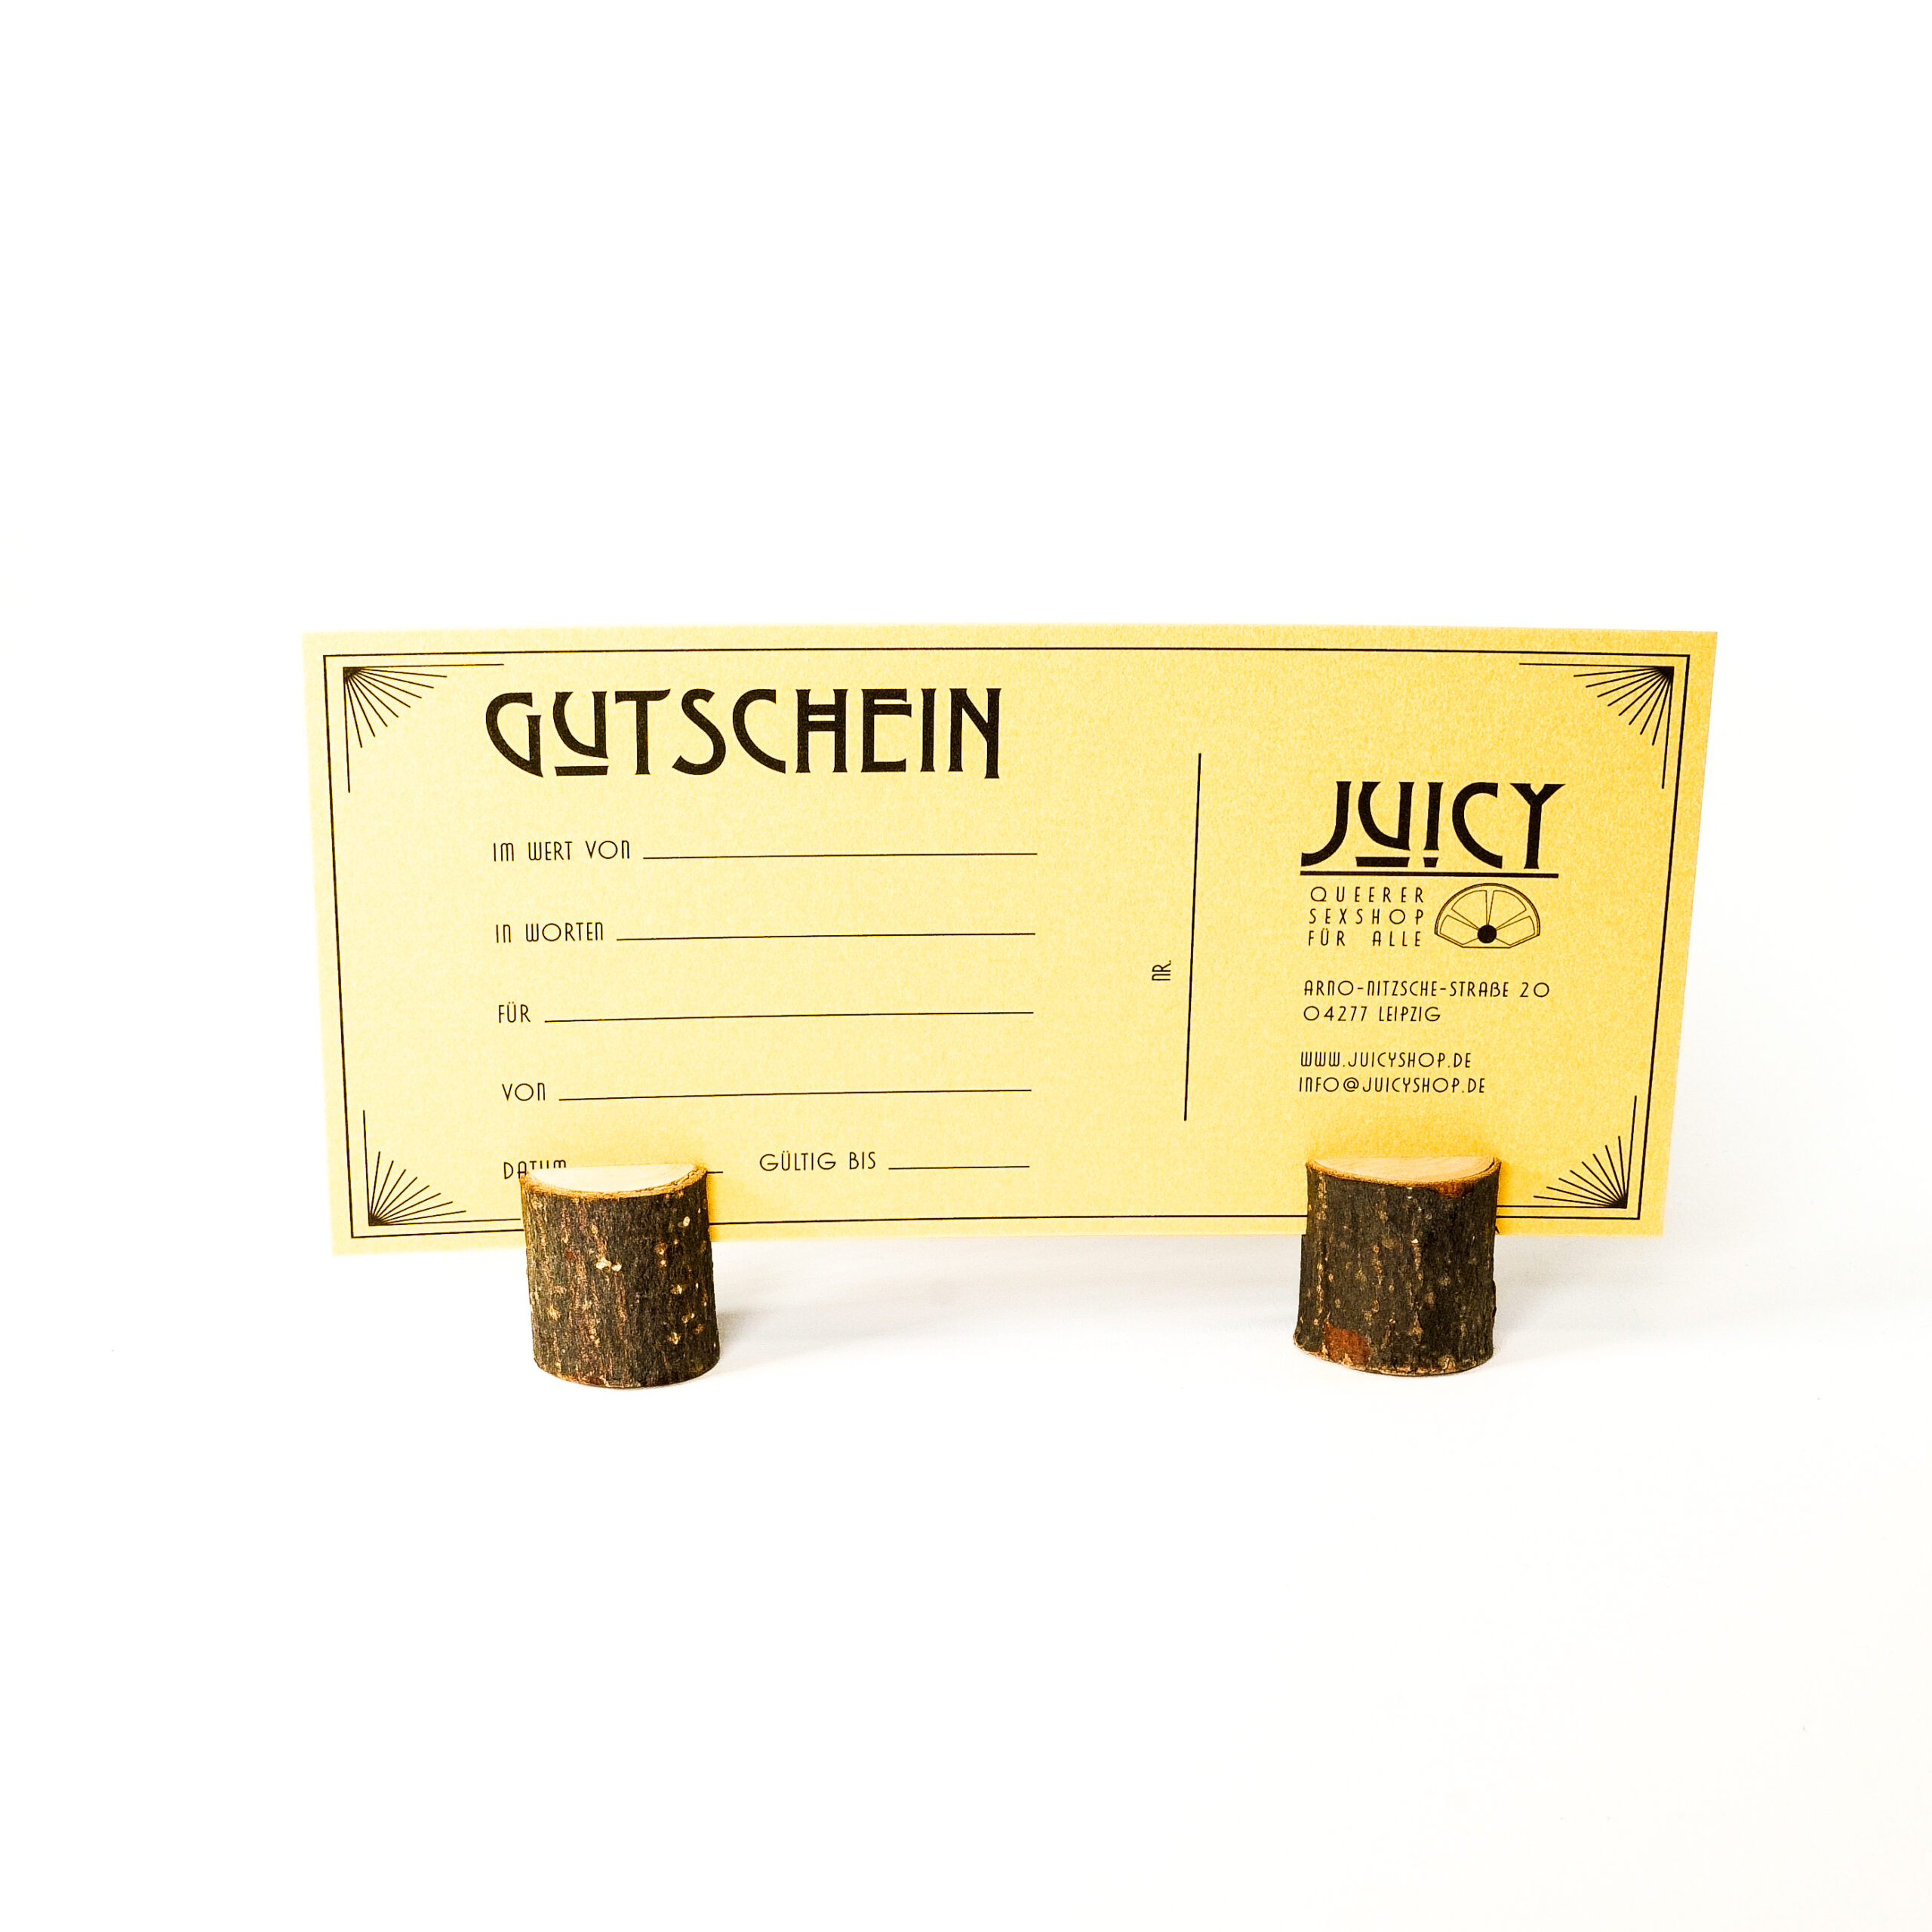 Produktbild: Ein goldener Gutschein steht auf kleinen Holzklötzen. Auf dem Gutschein steht die Adresse von Juicy, Zeilen für den Gutscheinbetrag und Zeilen von und für wen der Gutschein ist.